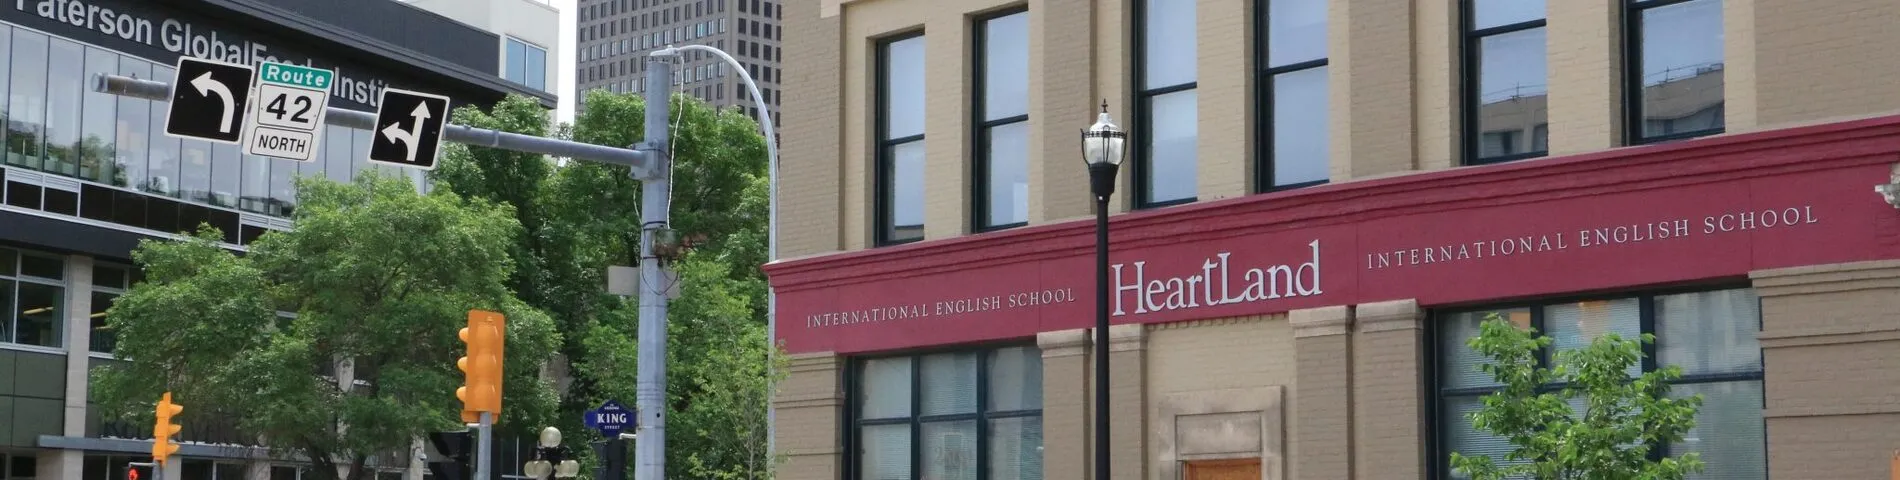 Heartland International English School зображення 1